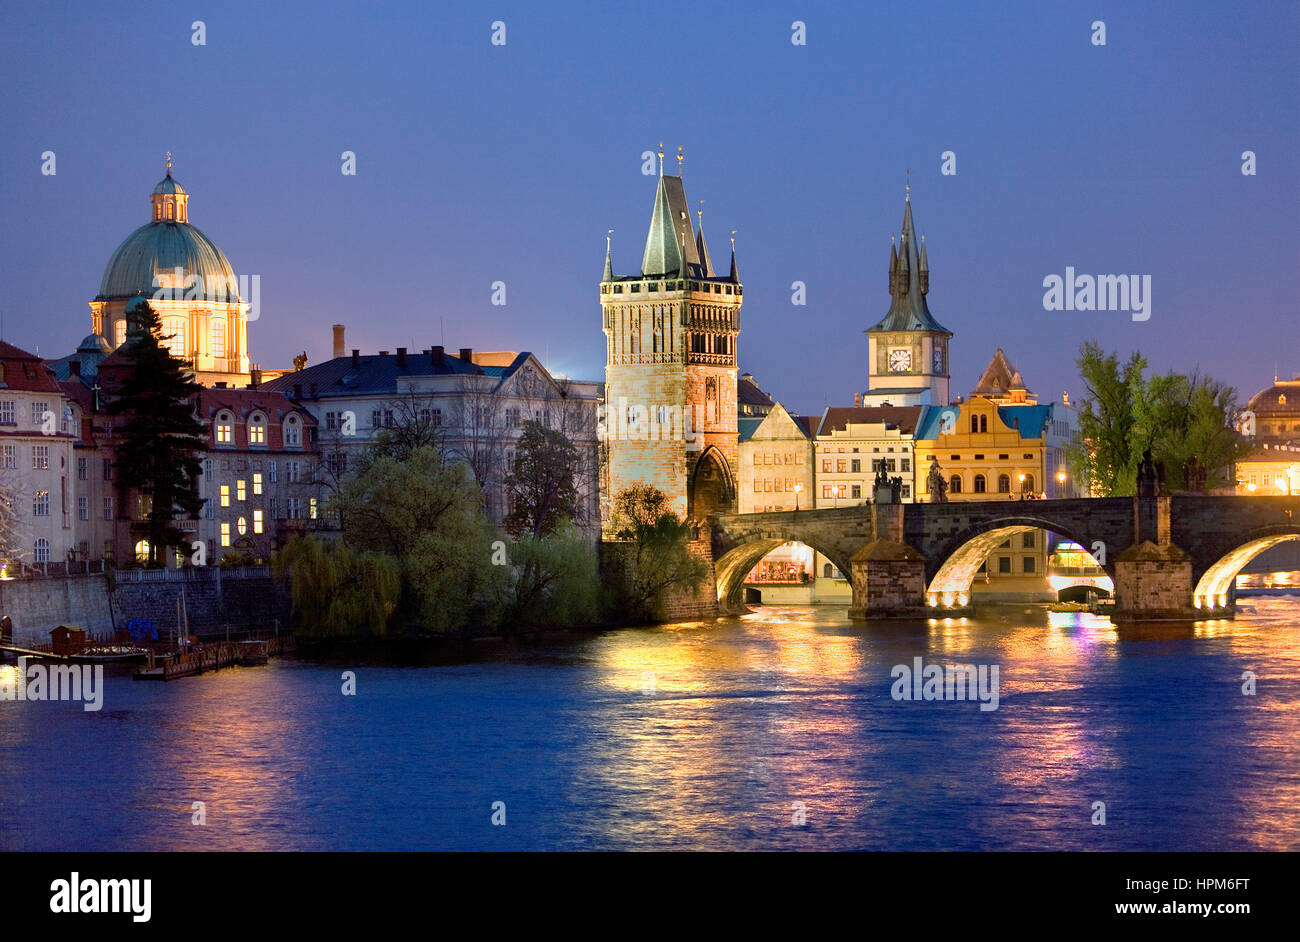 Altstadt und Vltava (Moldau), von Malá Strana gesehen. Bei richtigen Charles Bridge.Prague. Tschechische Republik Stockfoto